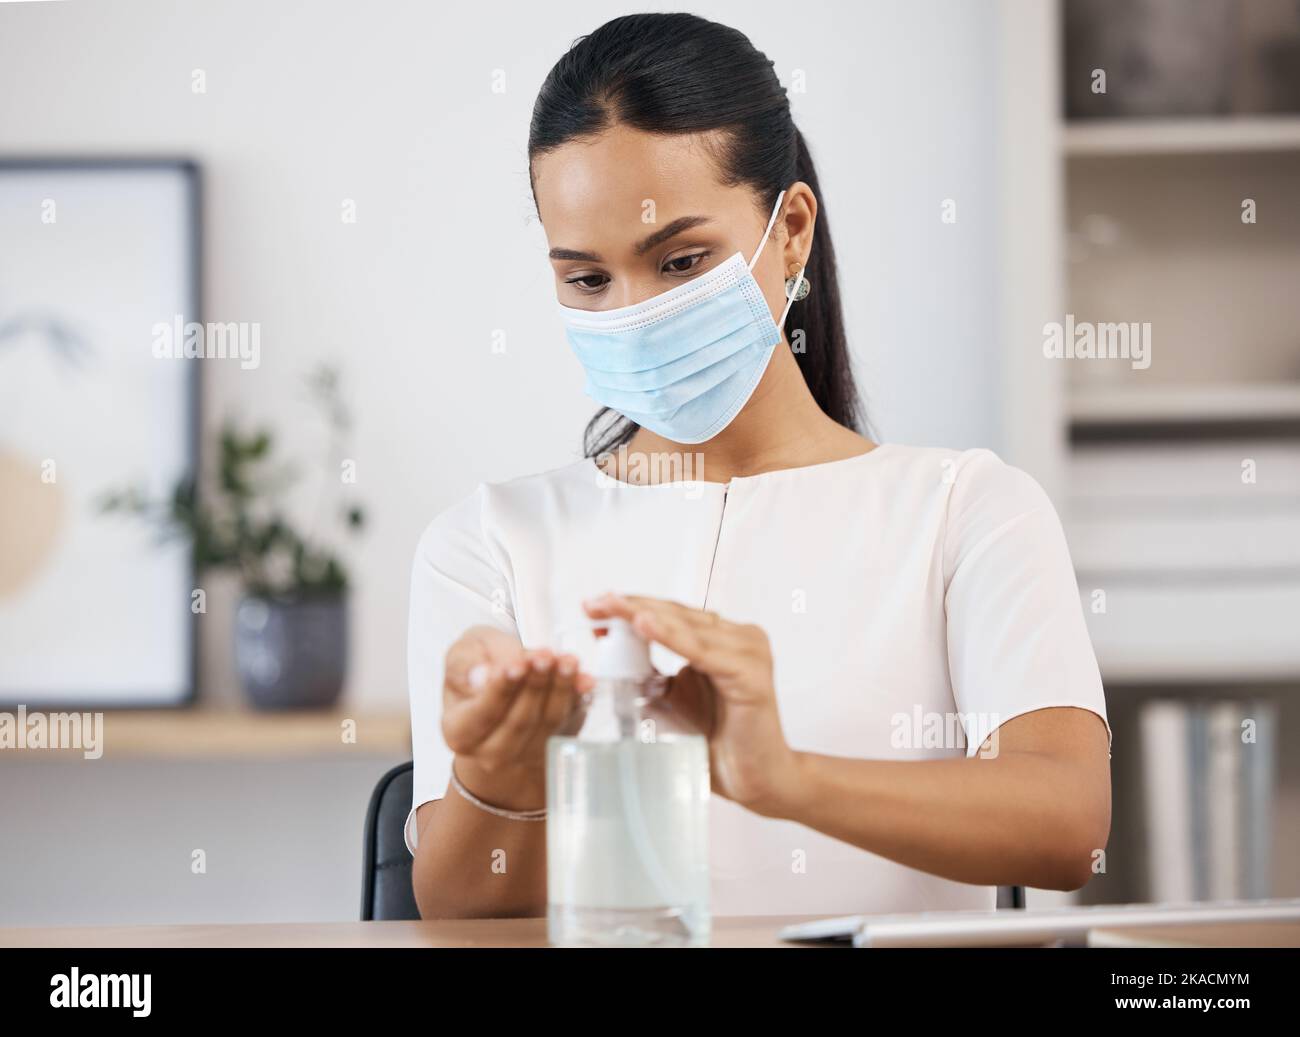 Les bactéries, les covidés et les femmes se nettoient les mains pour la conformité médicale et médicale dans un bureau au travail. Mexique, coronavirus et travailleur en masque facial Banque D'Images